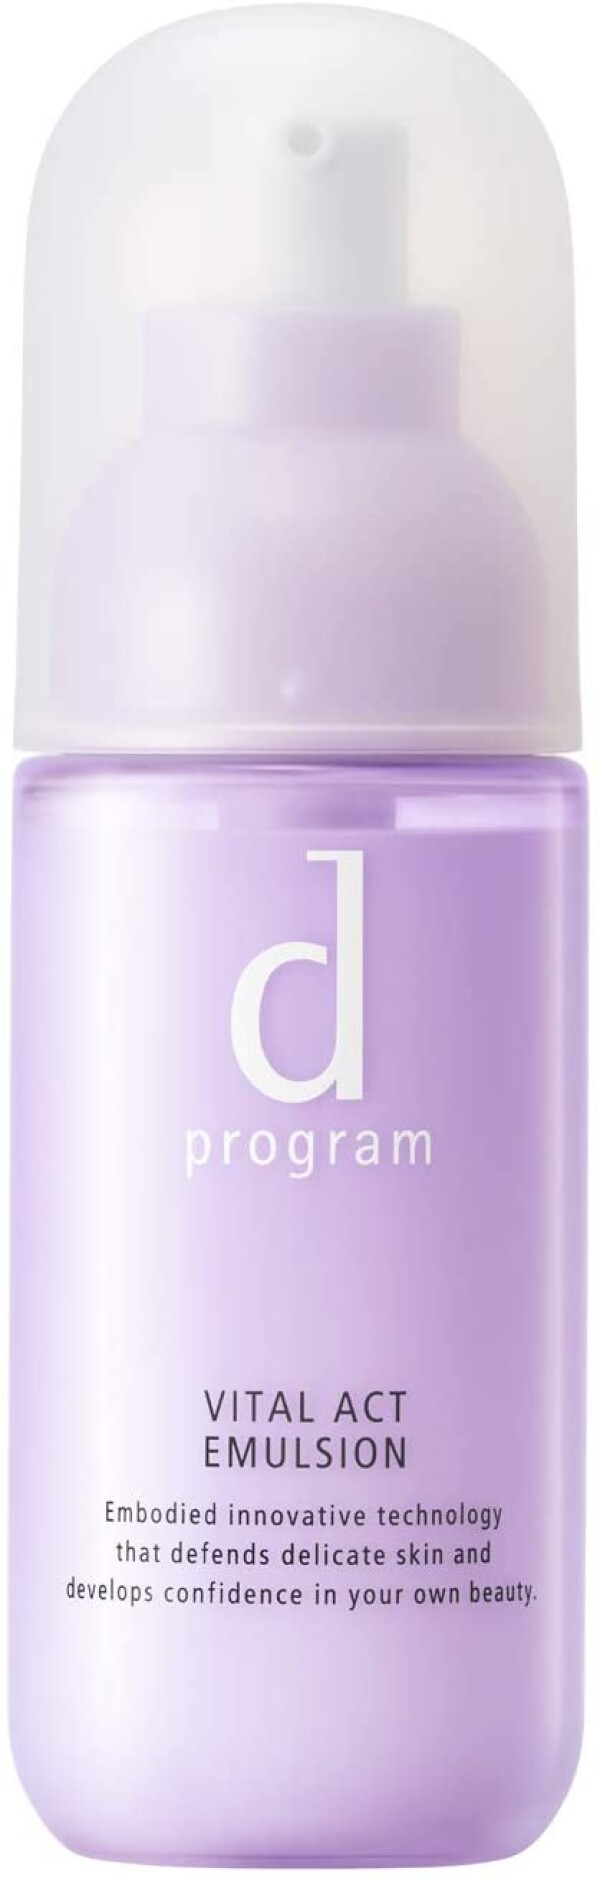 Увлажняющая эмульсия для возрастной кожи Shiseido D Program Vital Act Emulsion